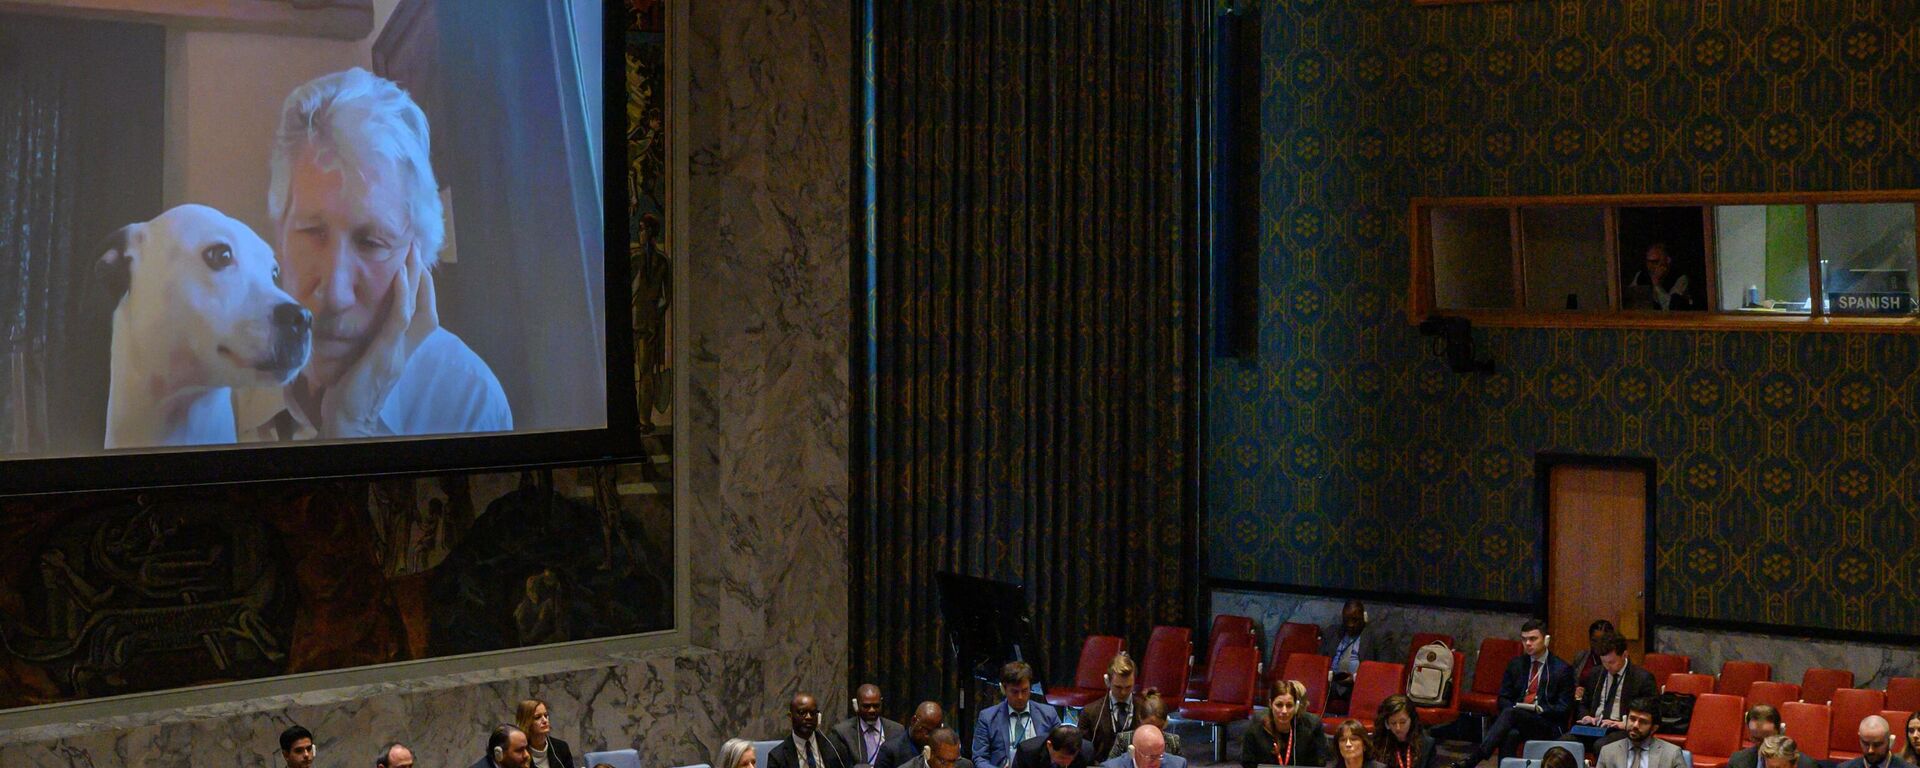 El músico británico Roger Waters participó en el Consejo de Seguridad de Naciones Unidas para abordar la crisis en Ucrania. - Sputnik Mundo, 1920, 08.02.2023